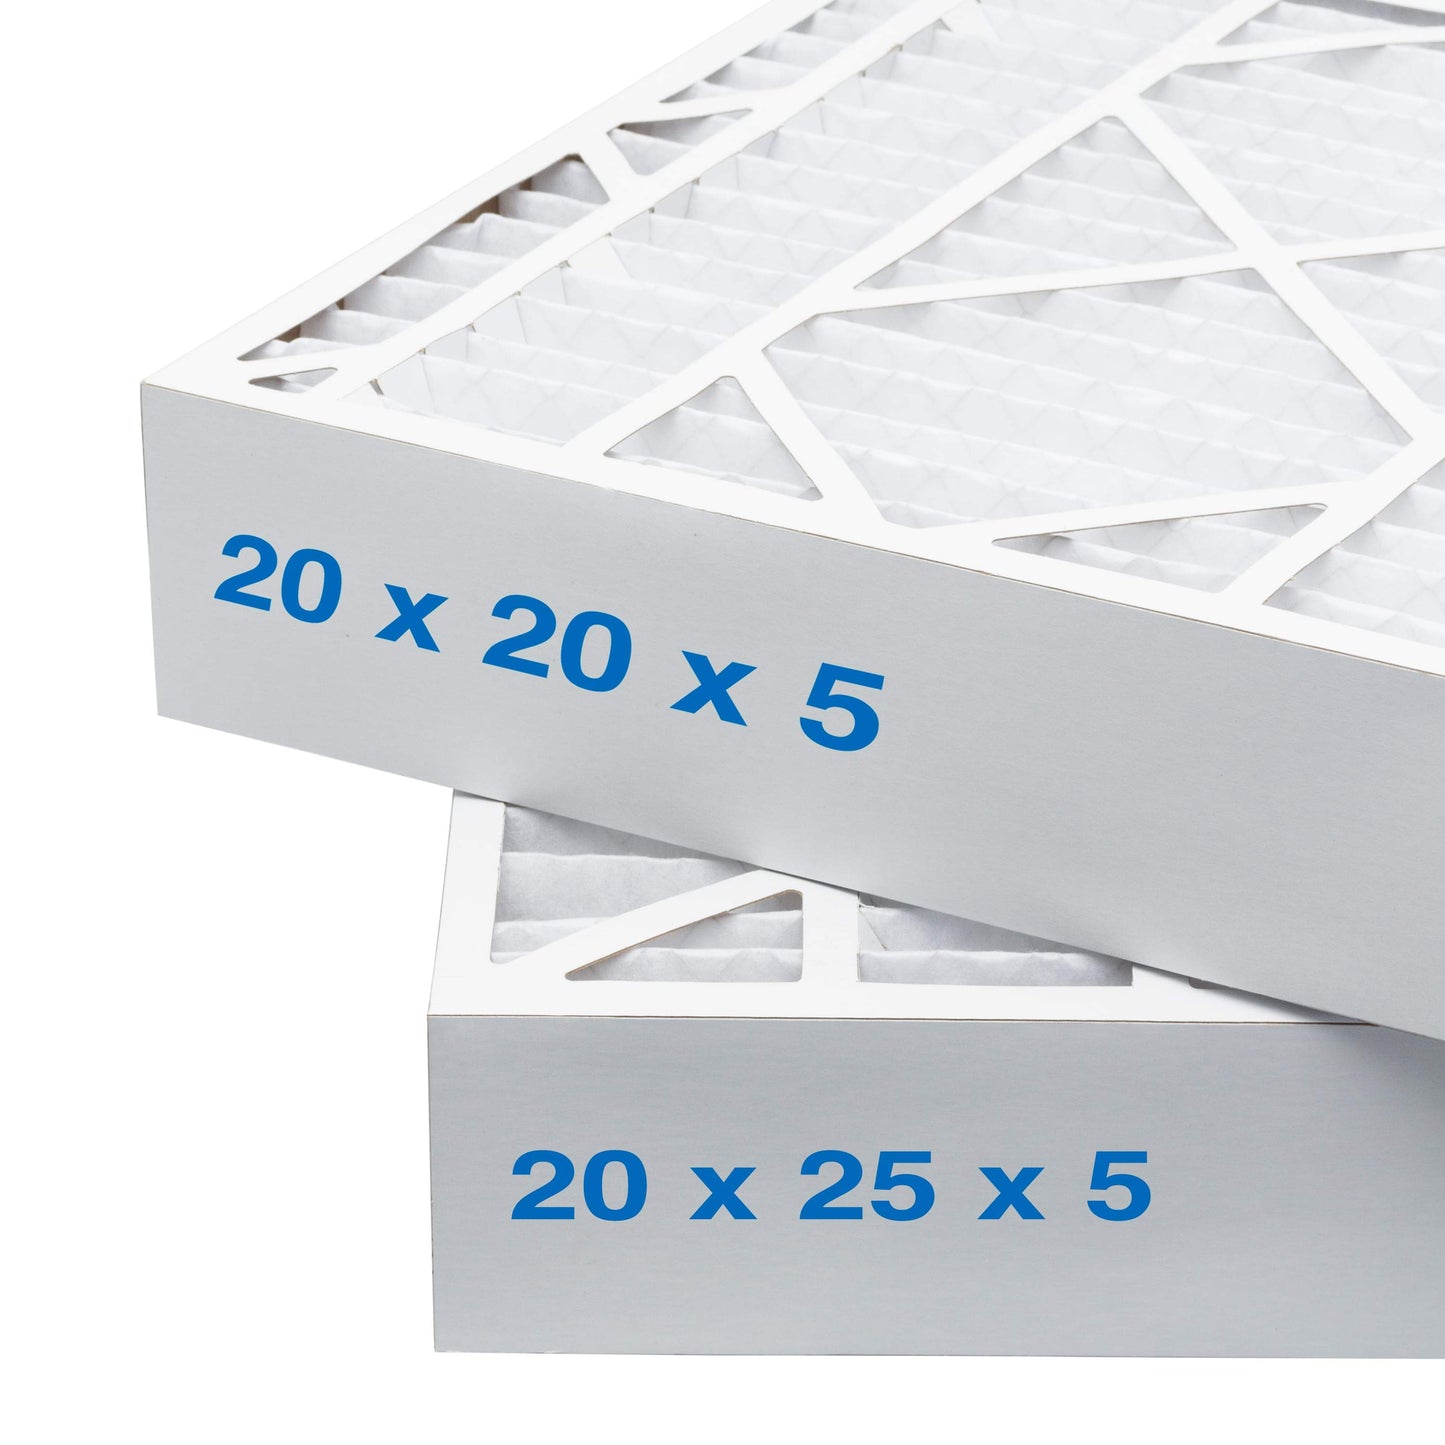 20x25x5 Air Filter - AC Furnace Filter